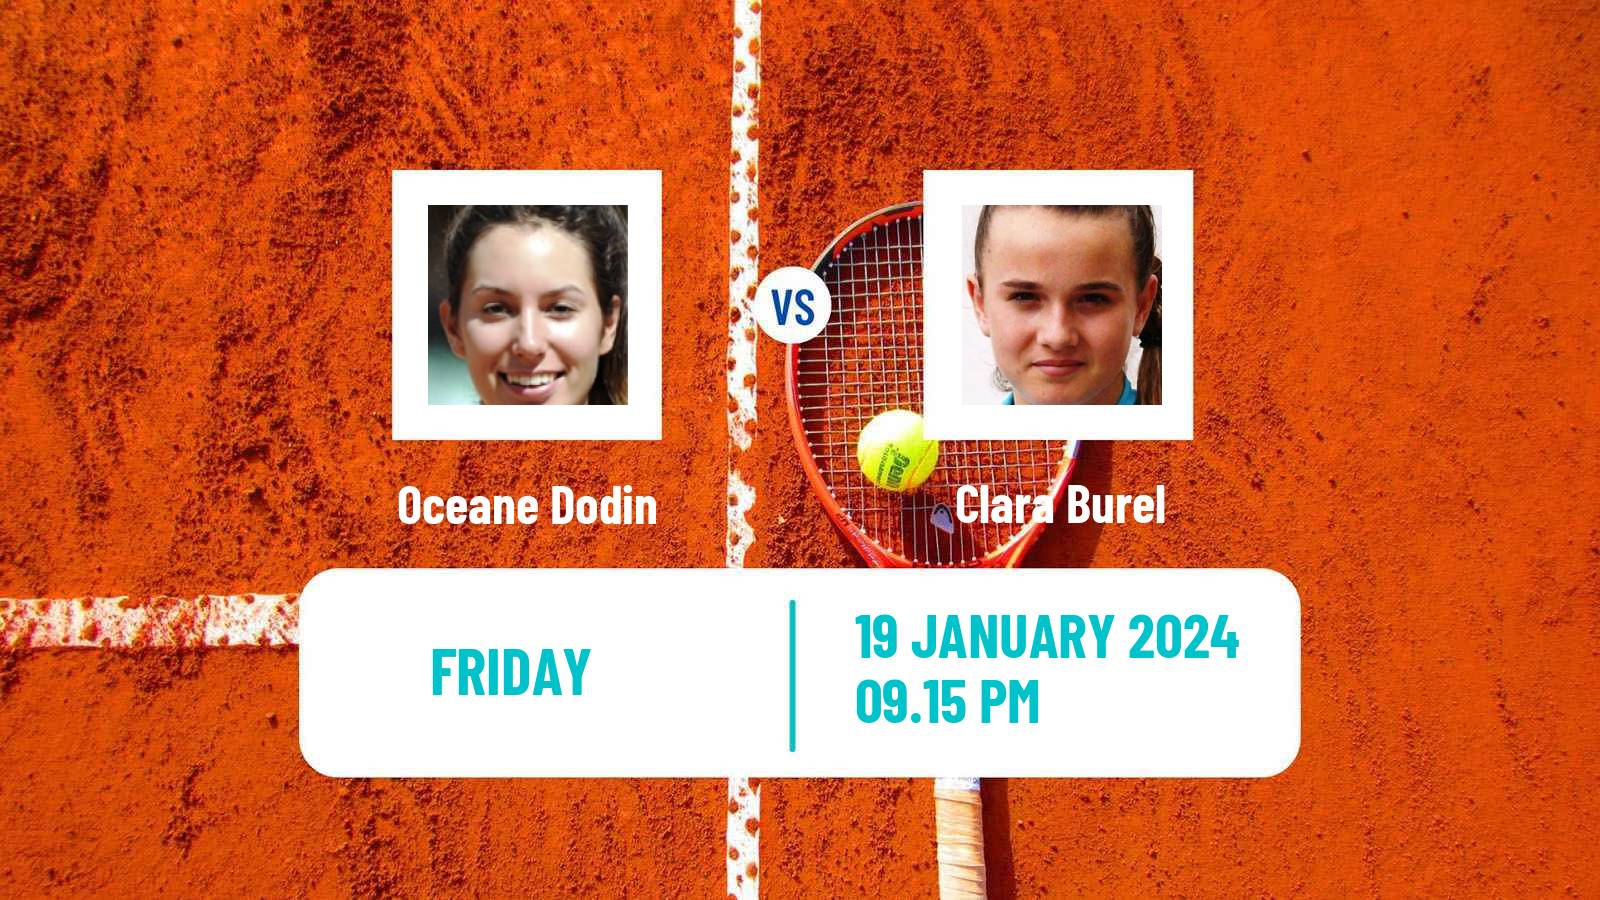 Tennis WTA Australian Open Oceane Dodin - Clara Burel